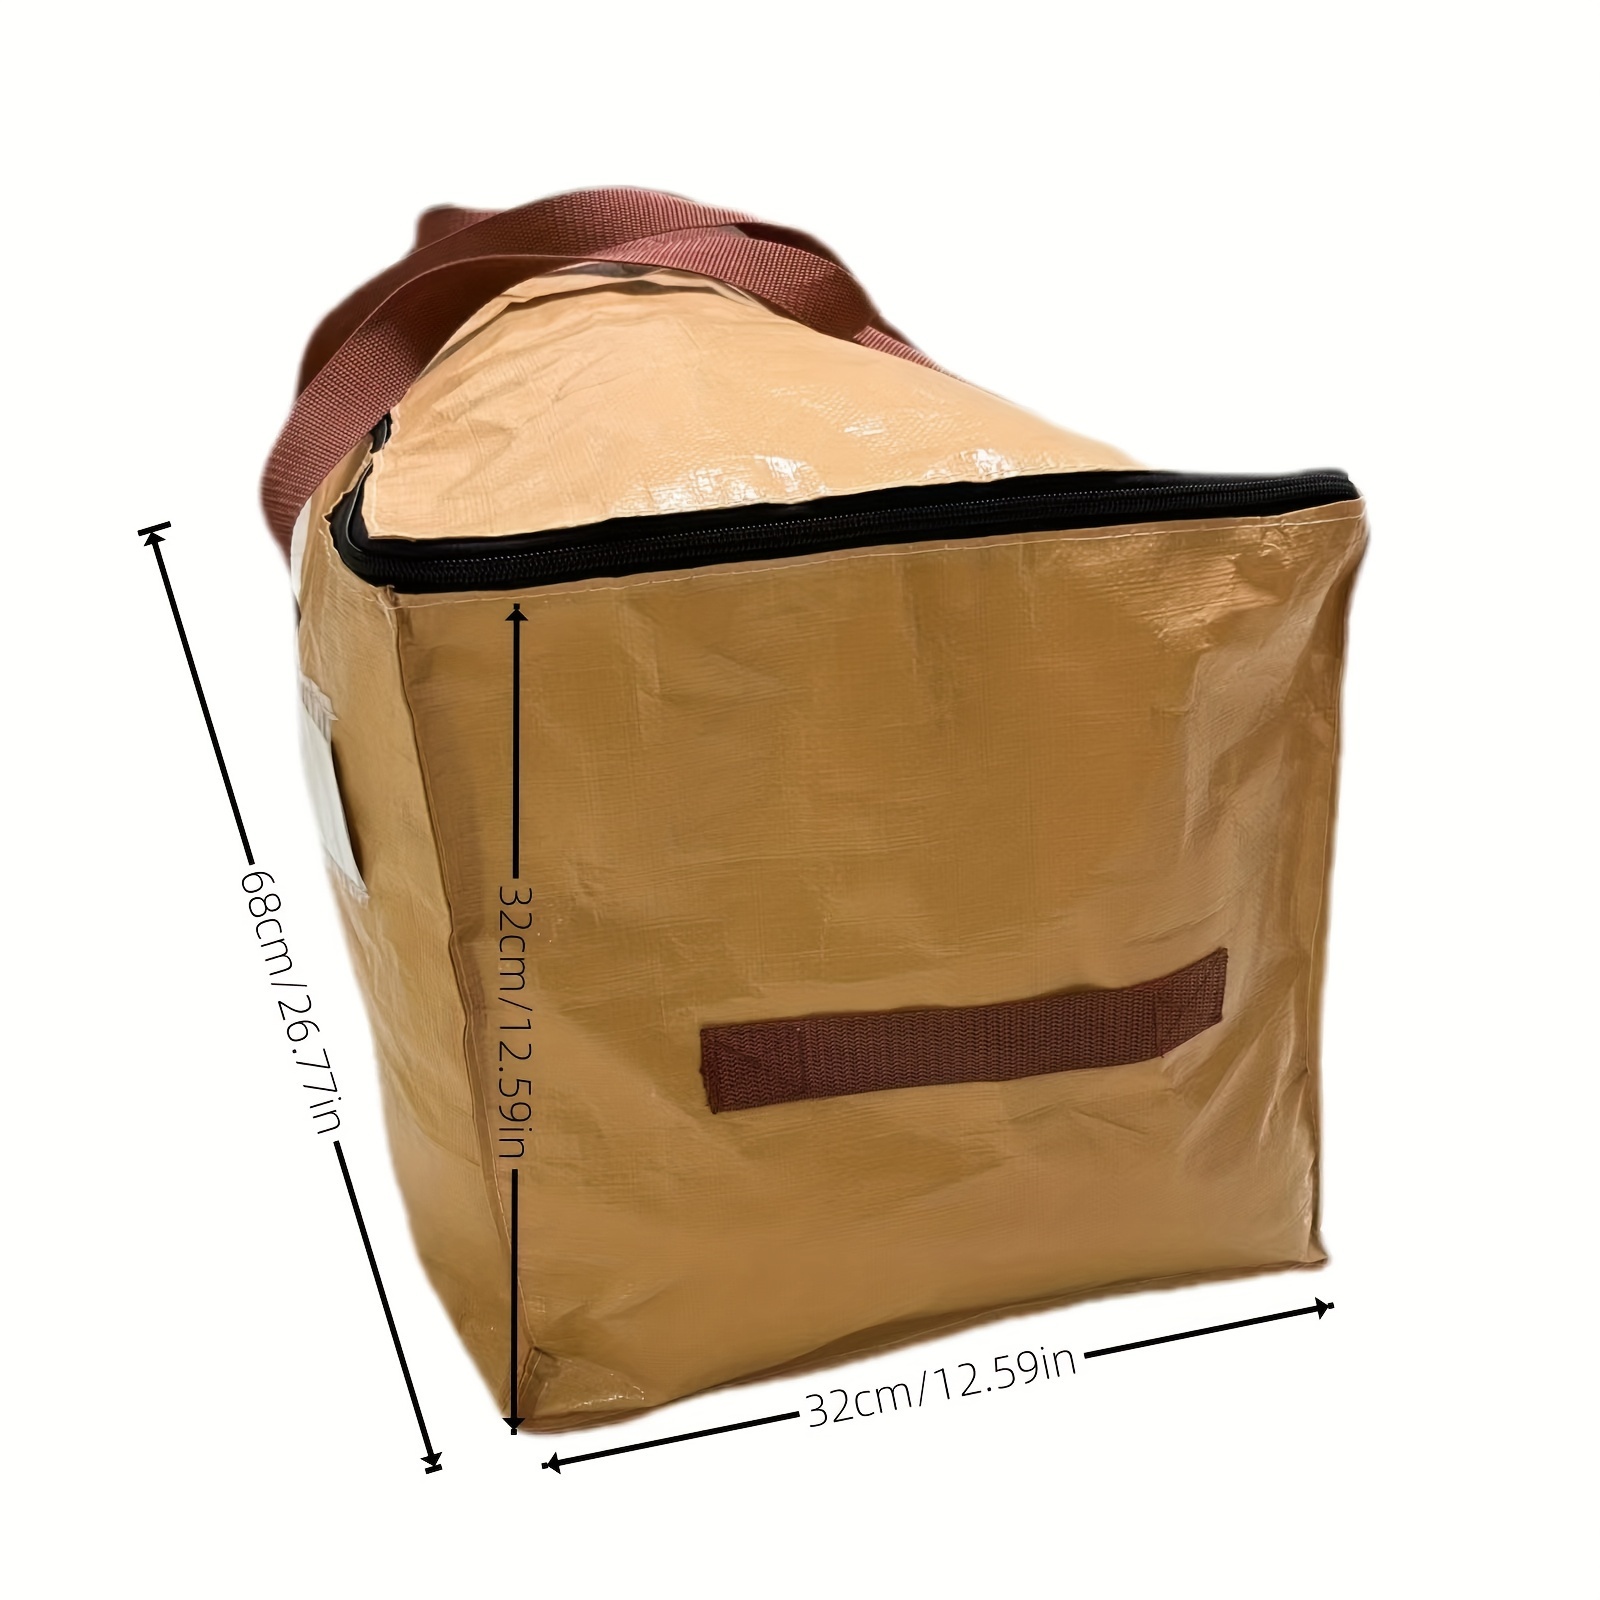 Real Purpose Apparel Waterproof Travel Bag